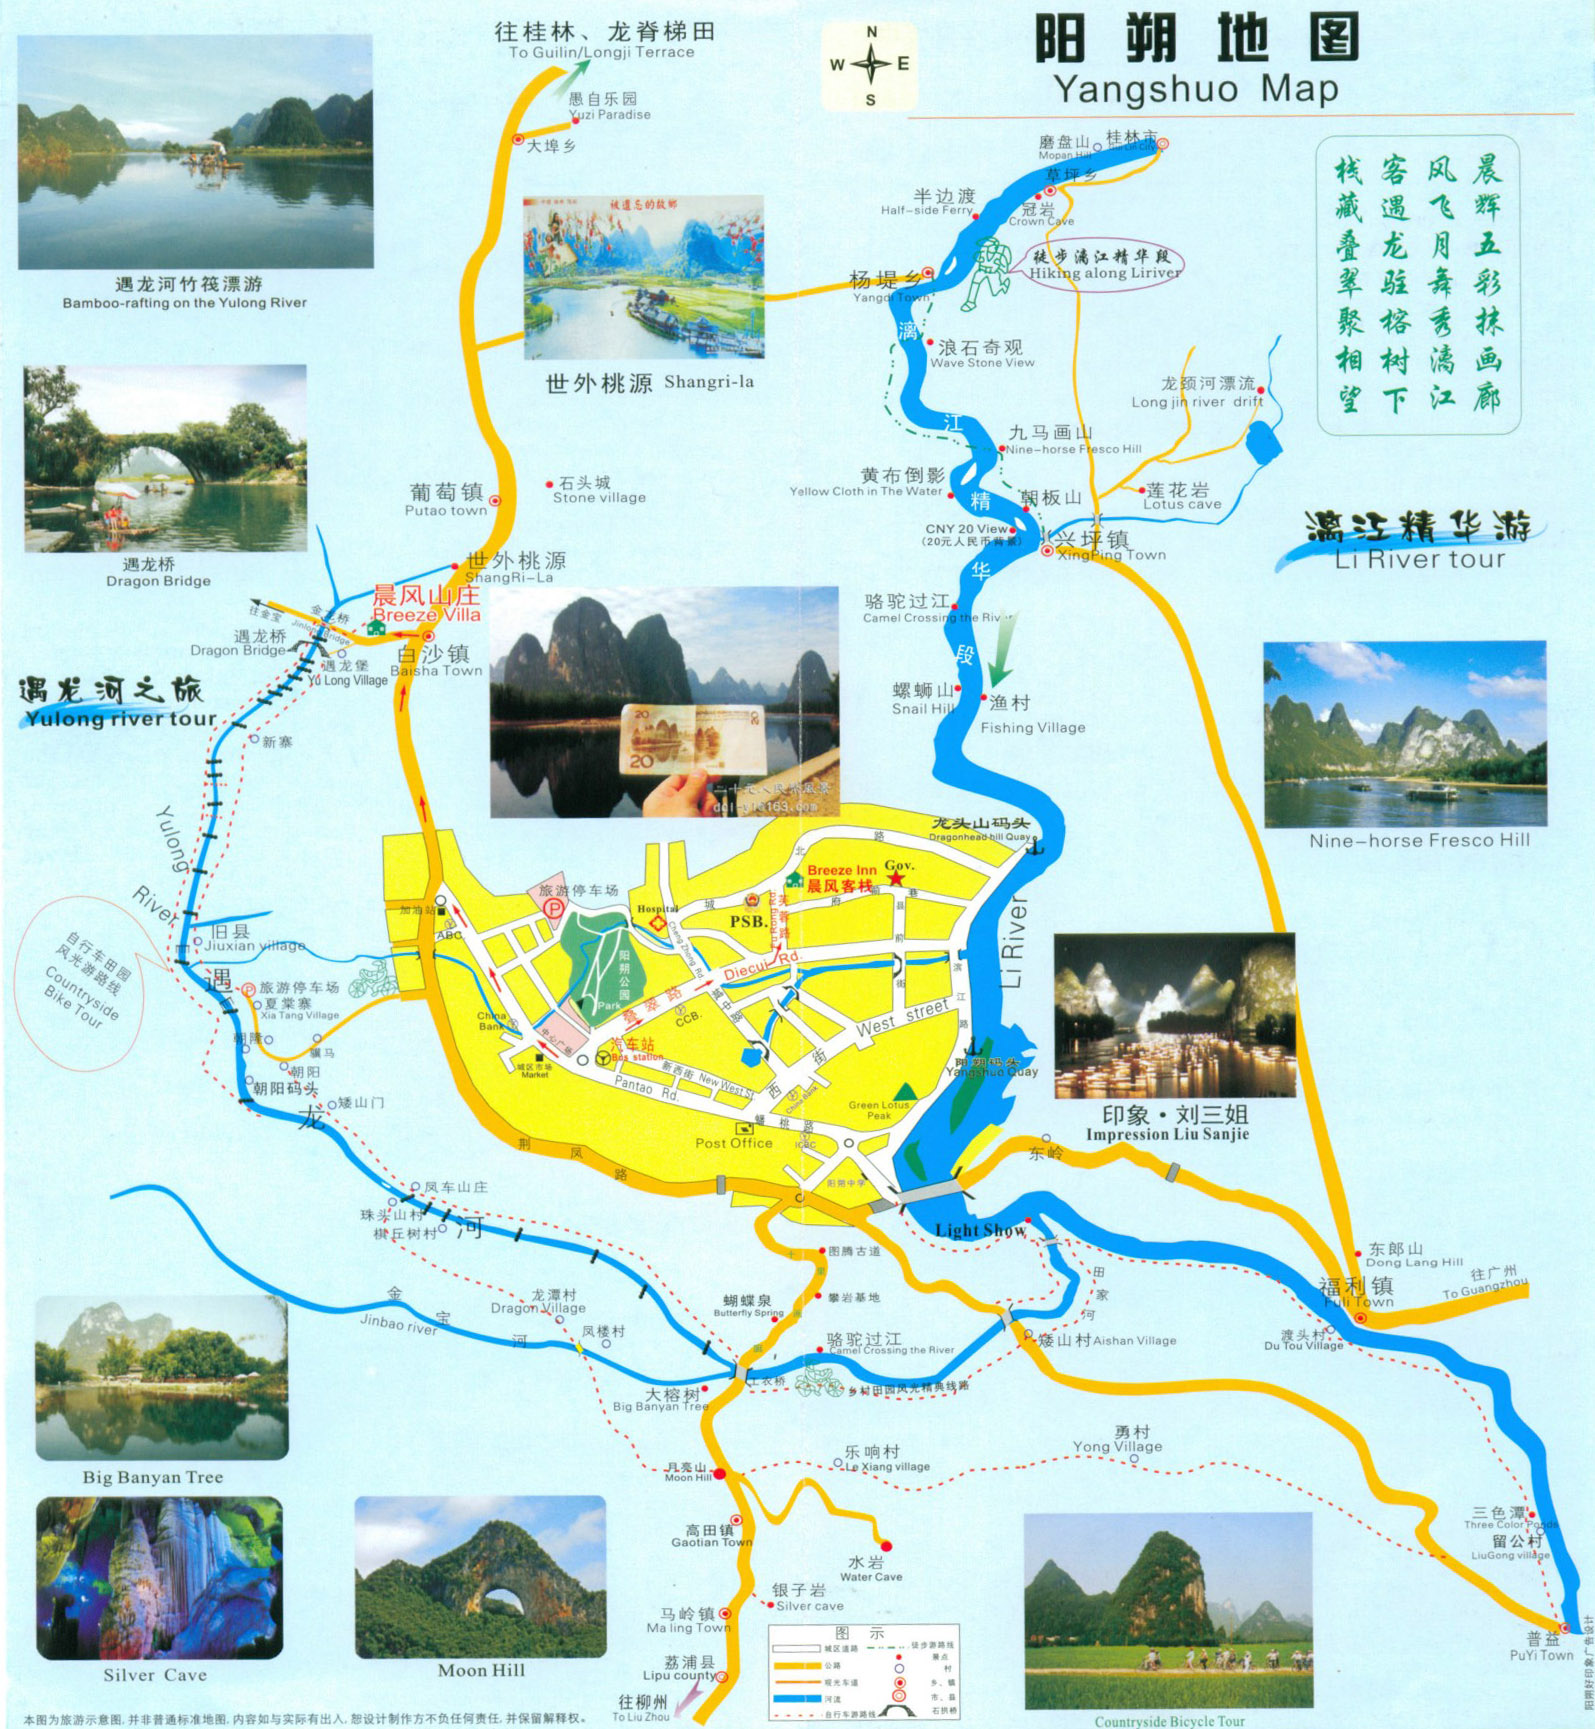 桂林市区行政划分地图展示_地图分享